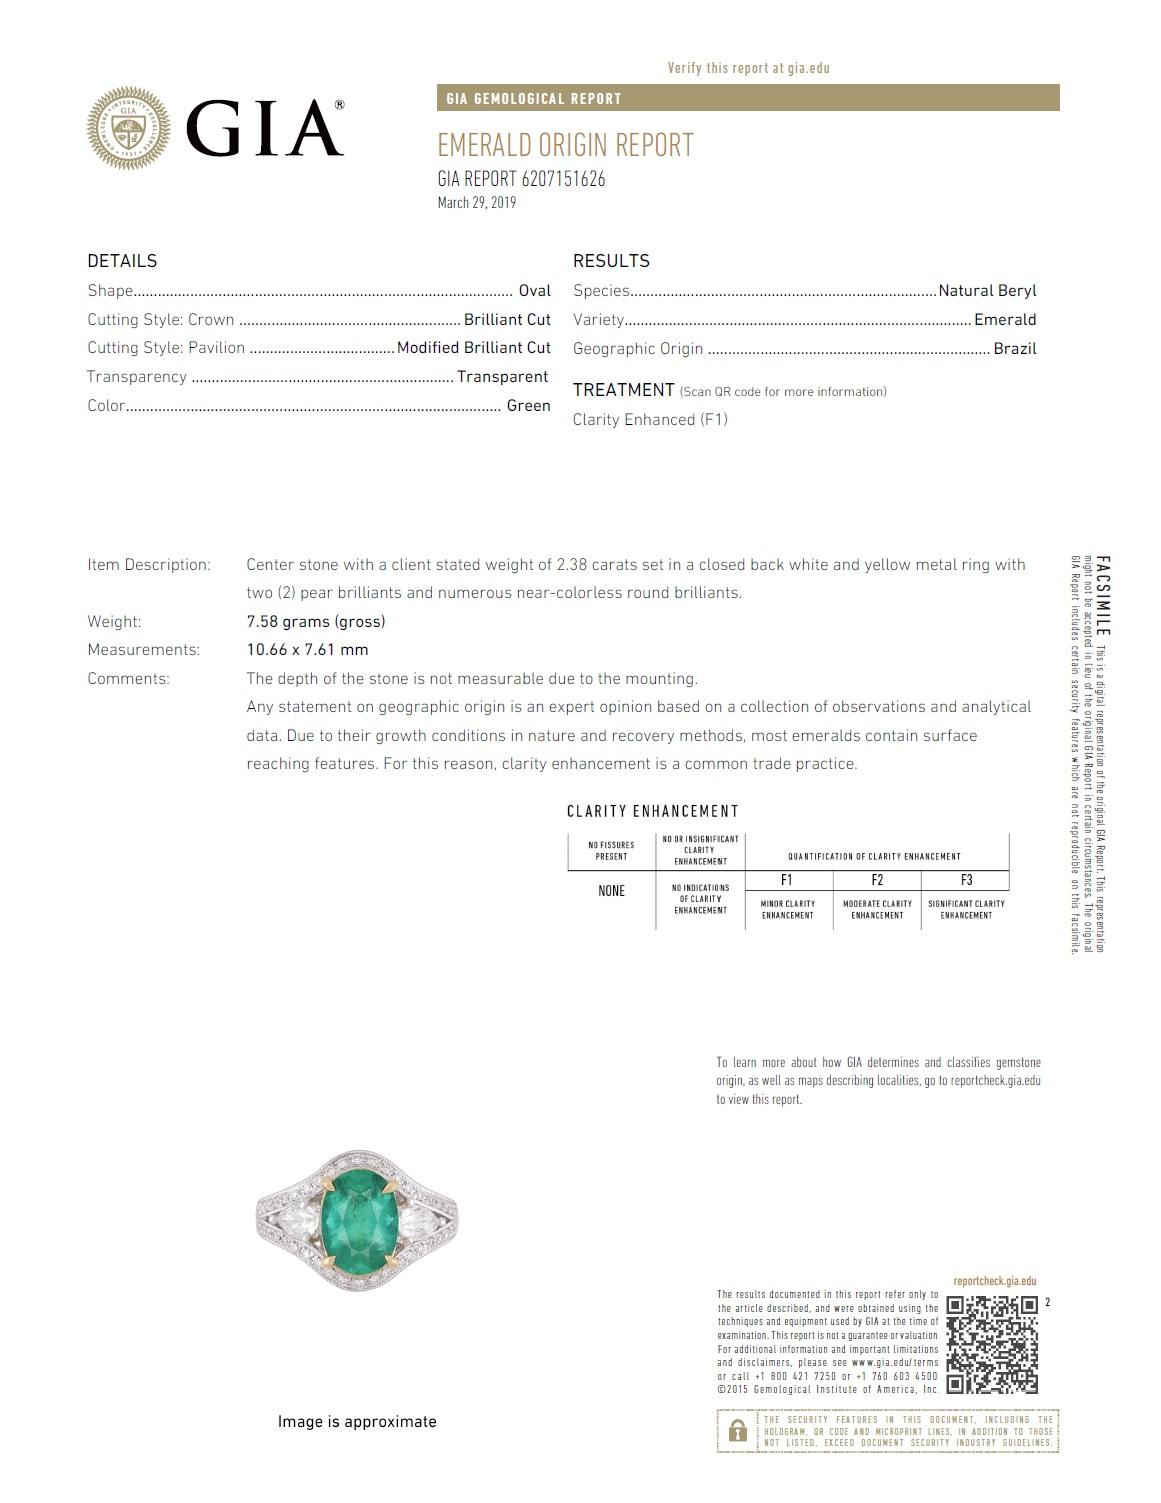 gia emerald certificate